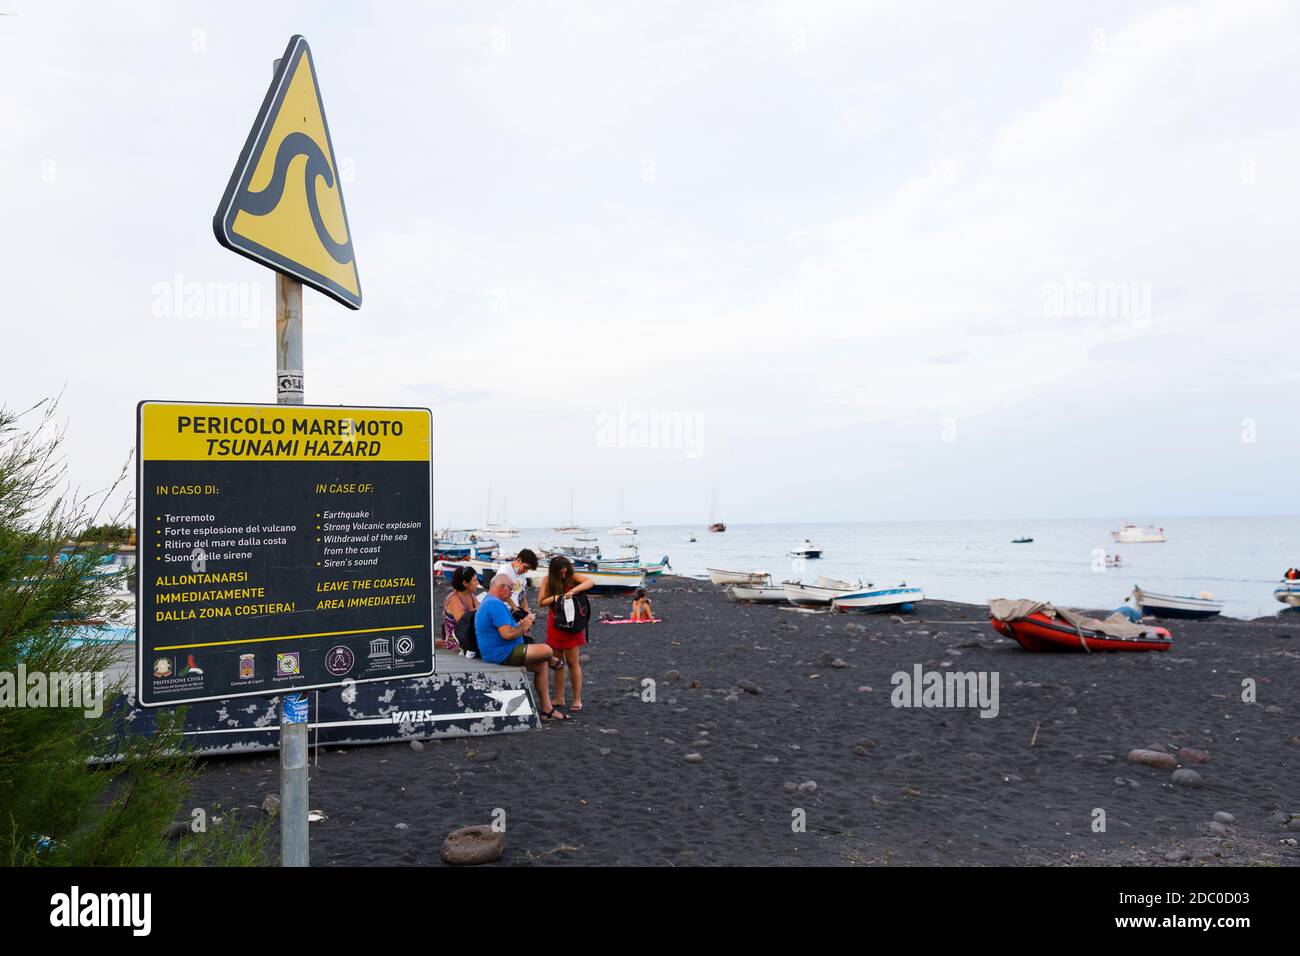 Sicilia, Italia. Un cartello di avvertimento sulla spiaggia sull'isola vulcanica di Stromboli fornisce istruzioni in caso di un evento geologico importante. Foto Stock